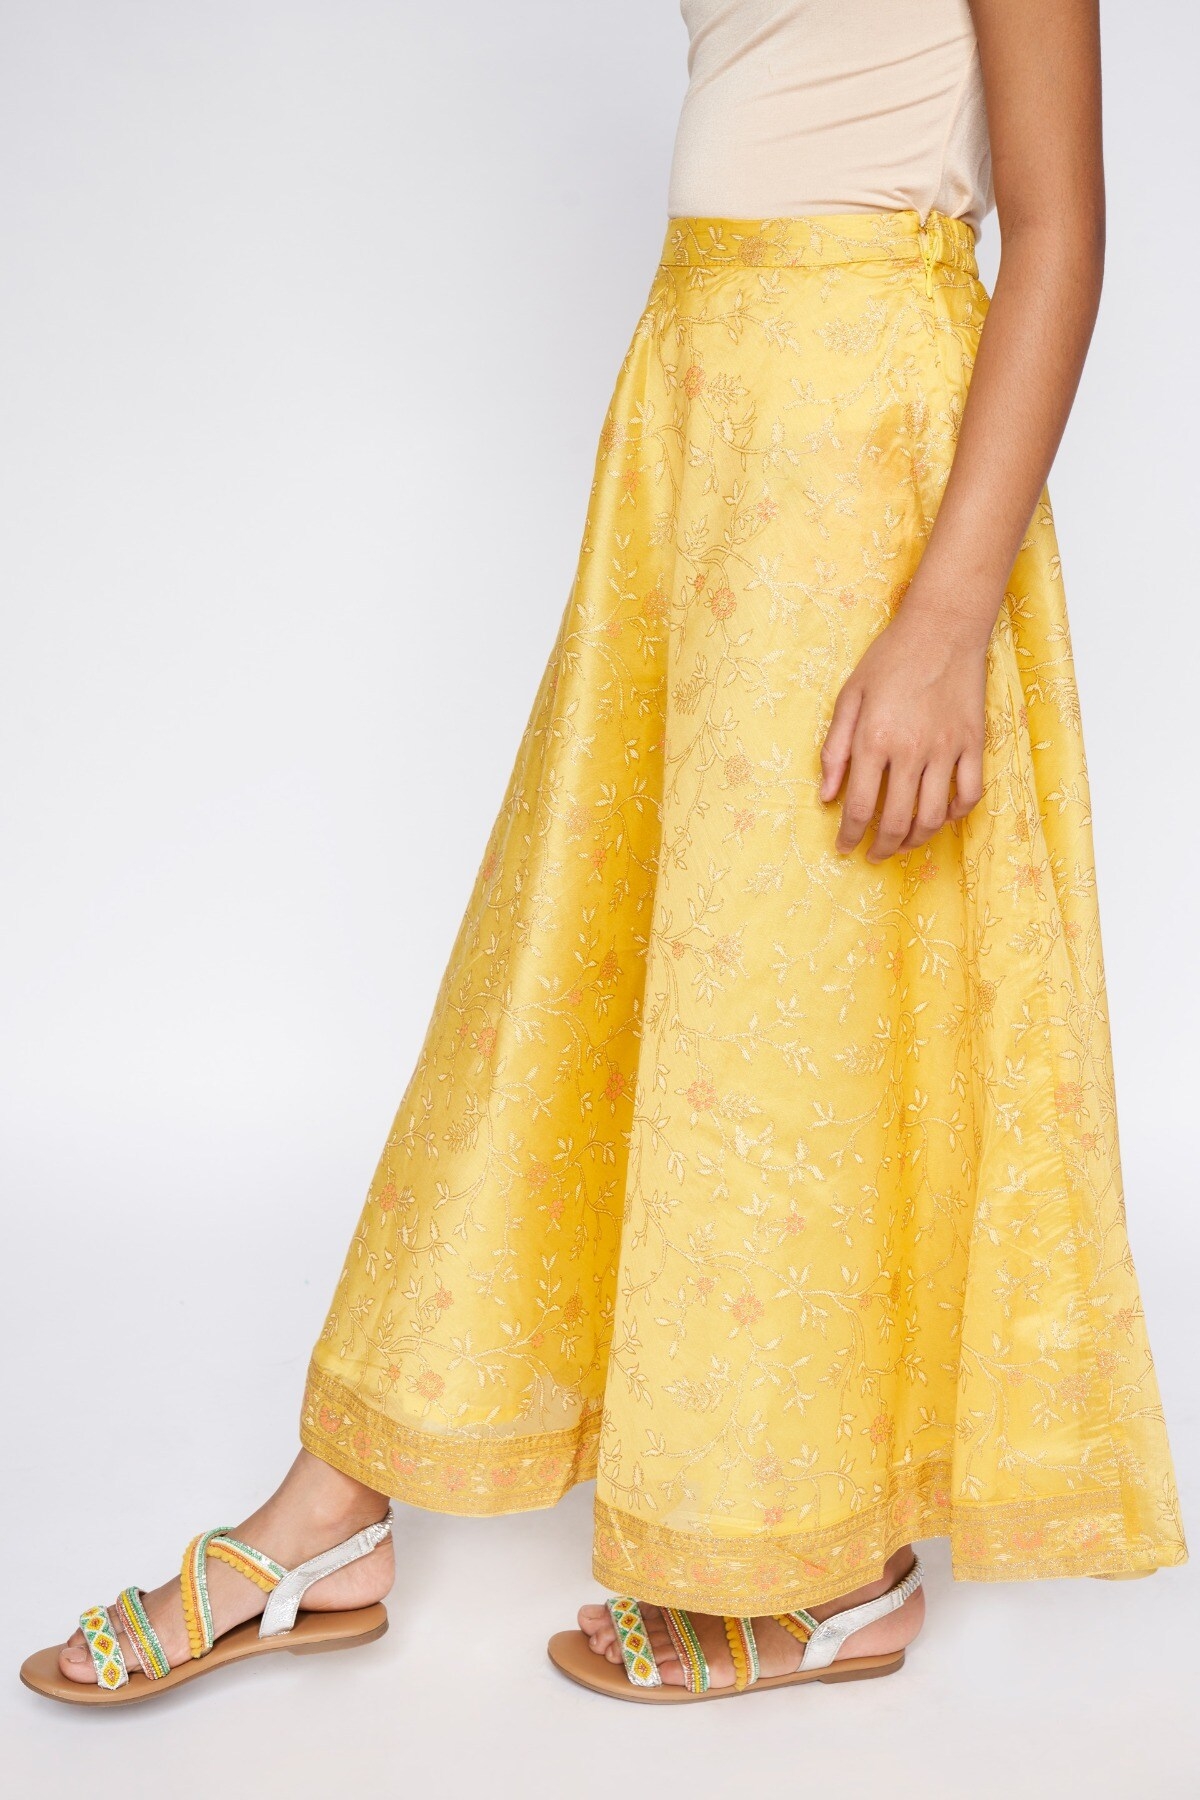 Global Desi | Global Desi Yellow Skirt 2